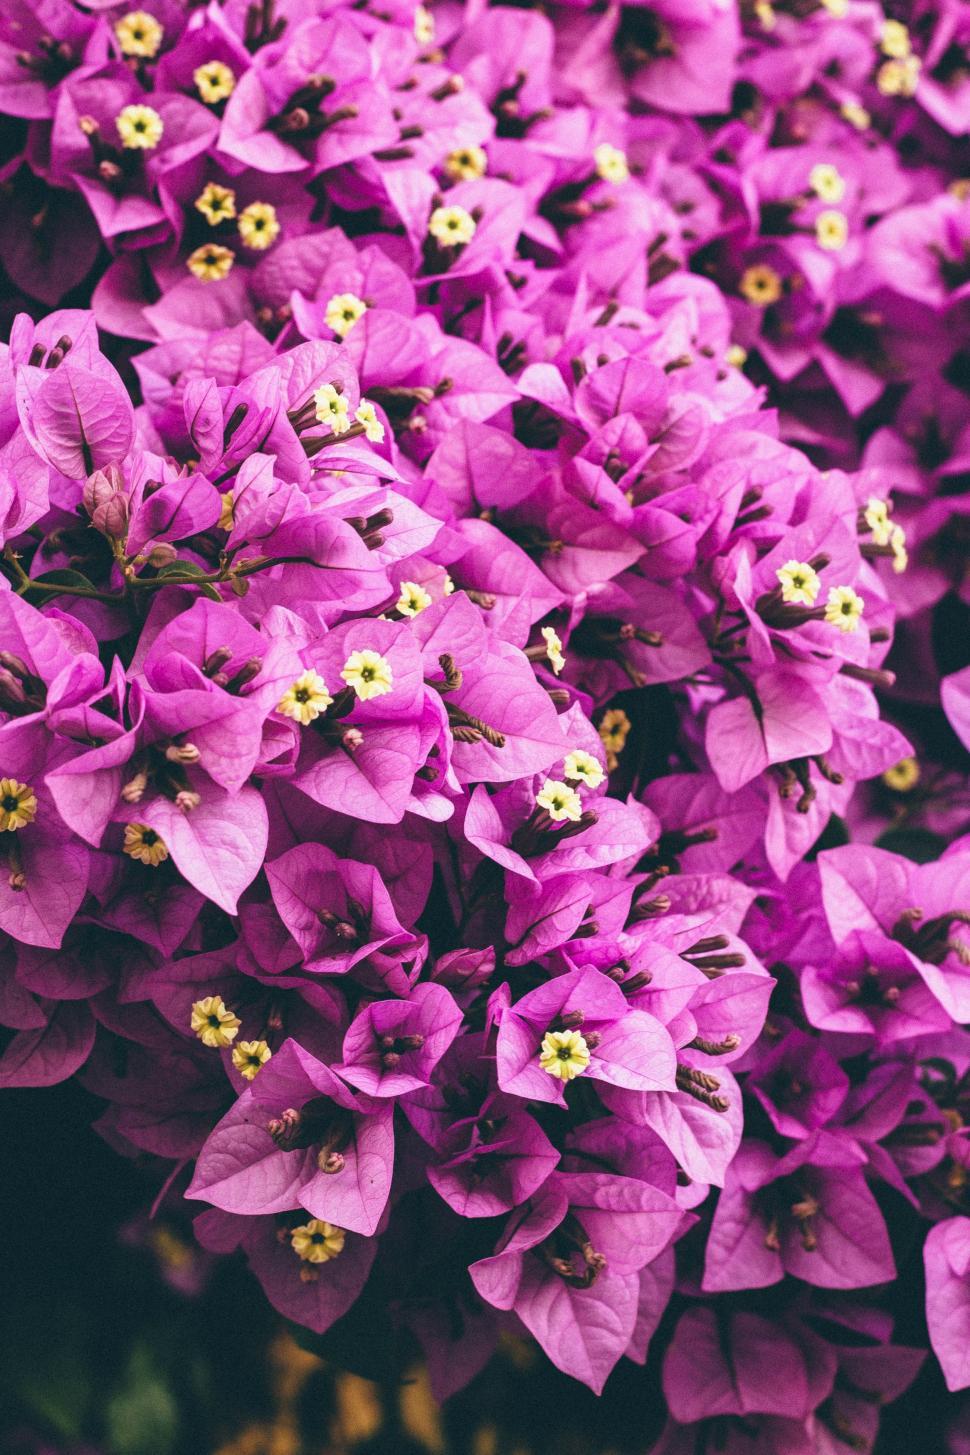 Free Image of Blooming Purple Flowers 